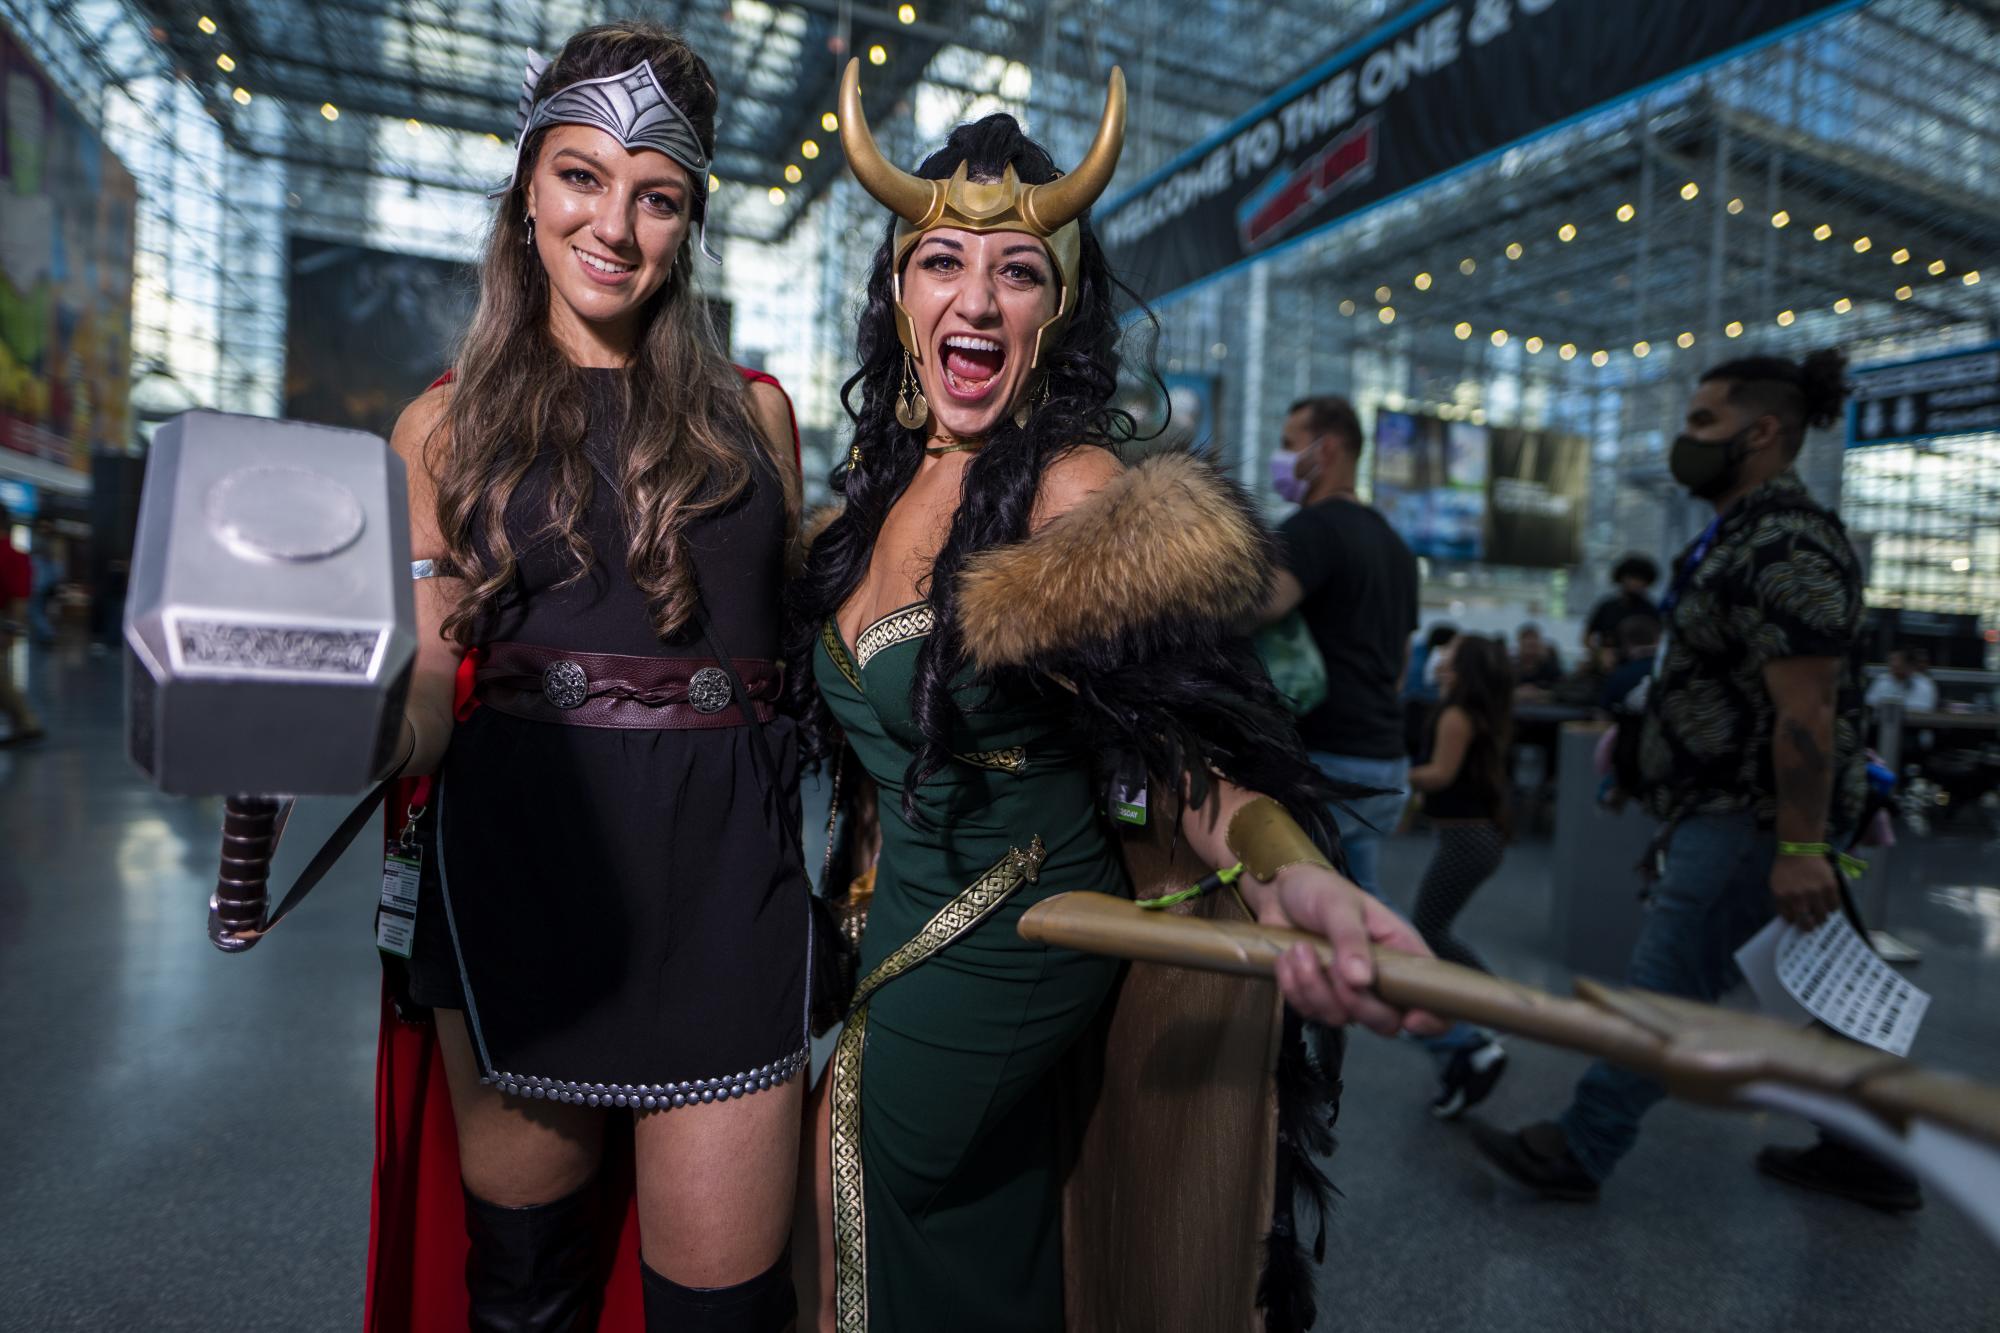 Dos mujeres vestidas como Thor, izquierda, y Loki posan durante la Comic Con de Nueva York en el Centro de Convenciones Jacob K.Javits el jueves 7 de octubre de 2021 en Nueva York. (Foto de Charles Sykes / Invision / AP)